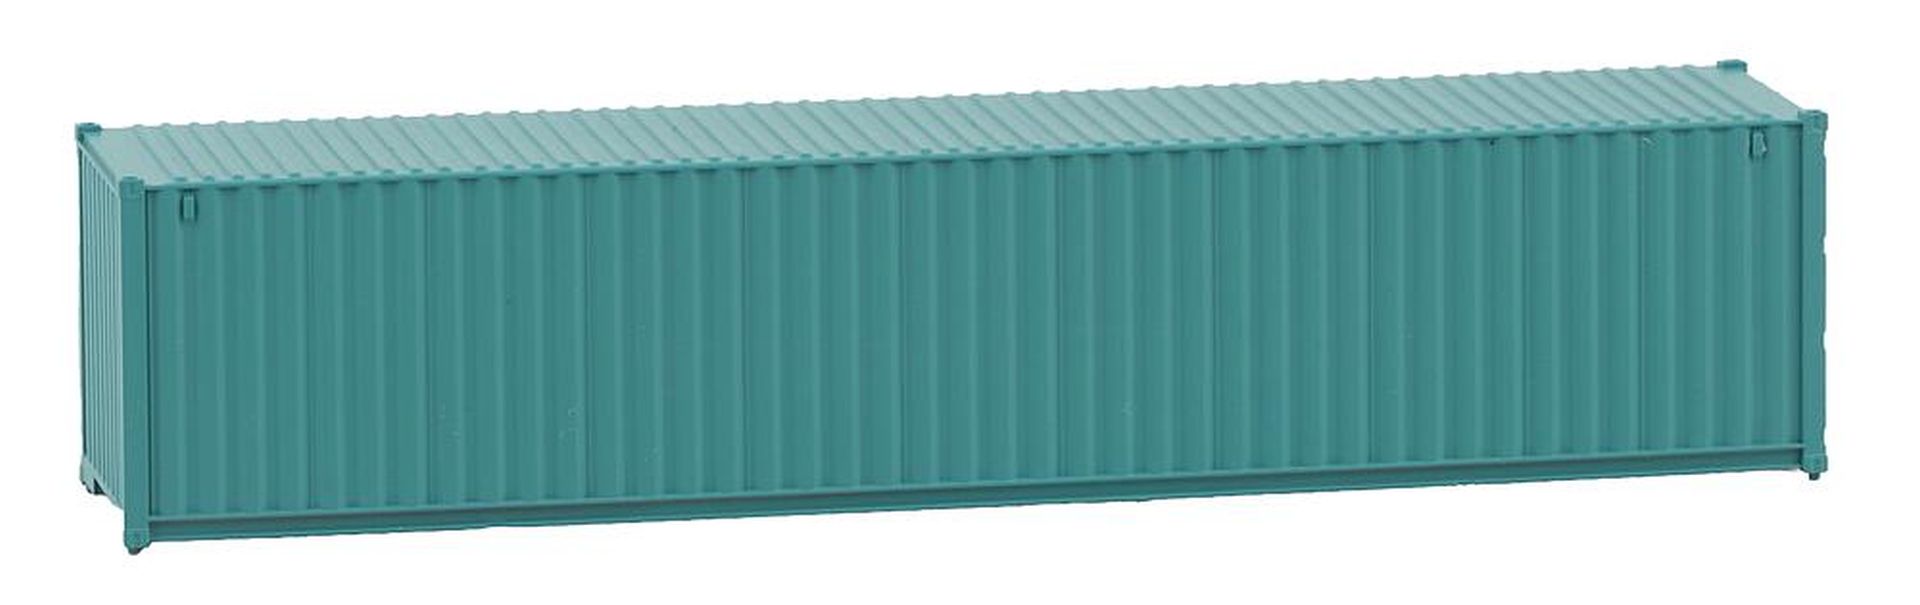 Faller 182103 - 40' Container, grün